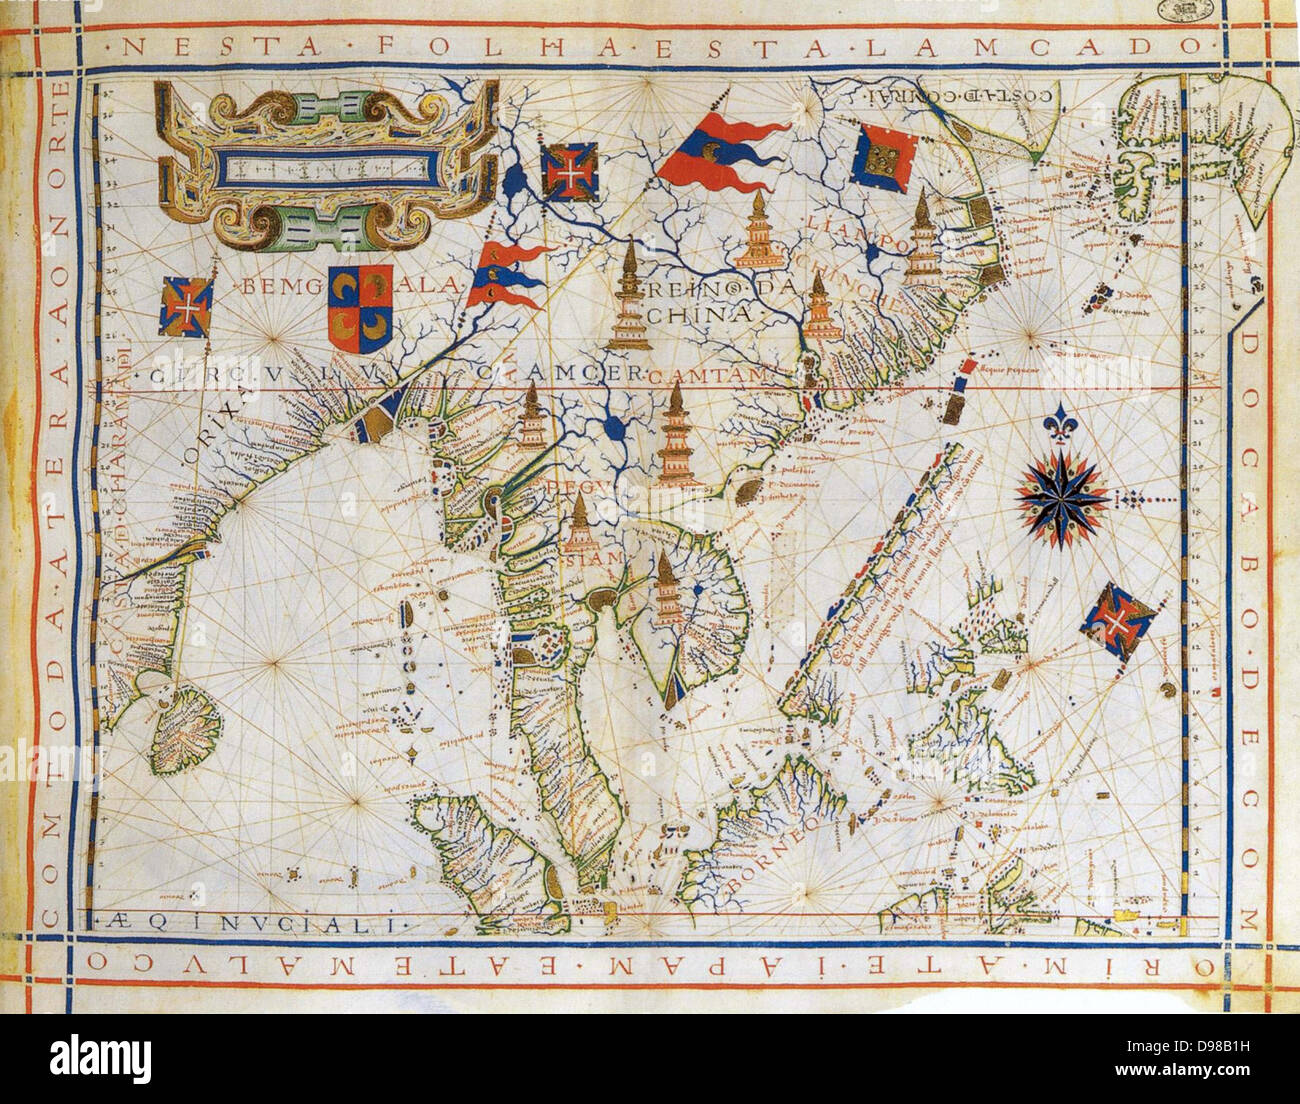 Avion-chart, pré-carte Mercator de 1571 par le cartographe portugais Fernao Vaz Dourado (c1520-c1580). Carte de l'Est de l'Inde, baie du Bengale, au sud-est de la Chine, Thailandnd, Bornéo, et le Japon. Le tropique du Cancer porte le nom. Banque D'Images